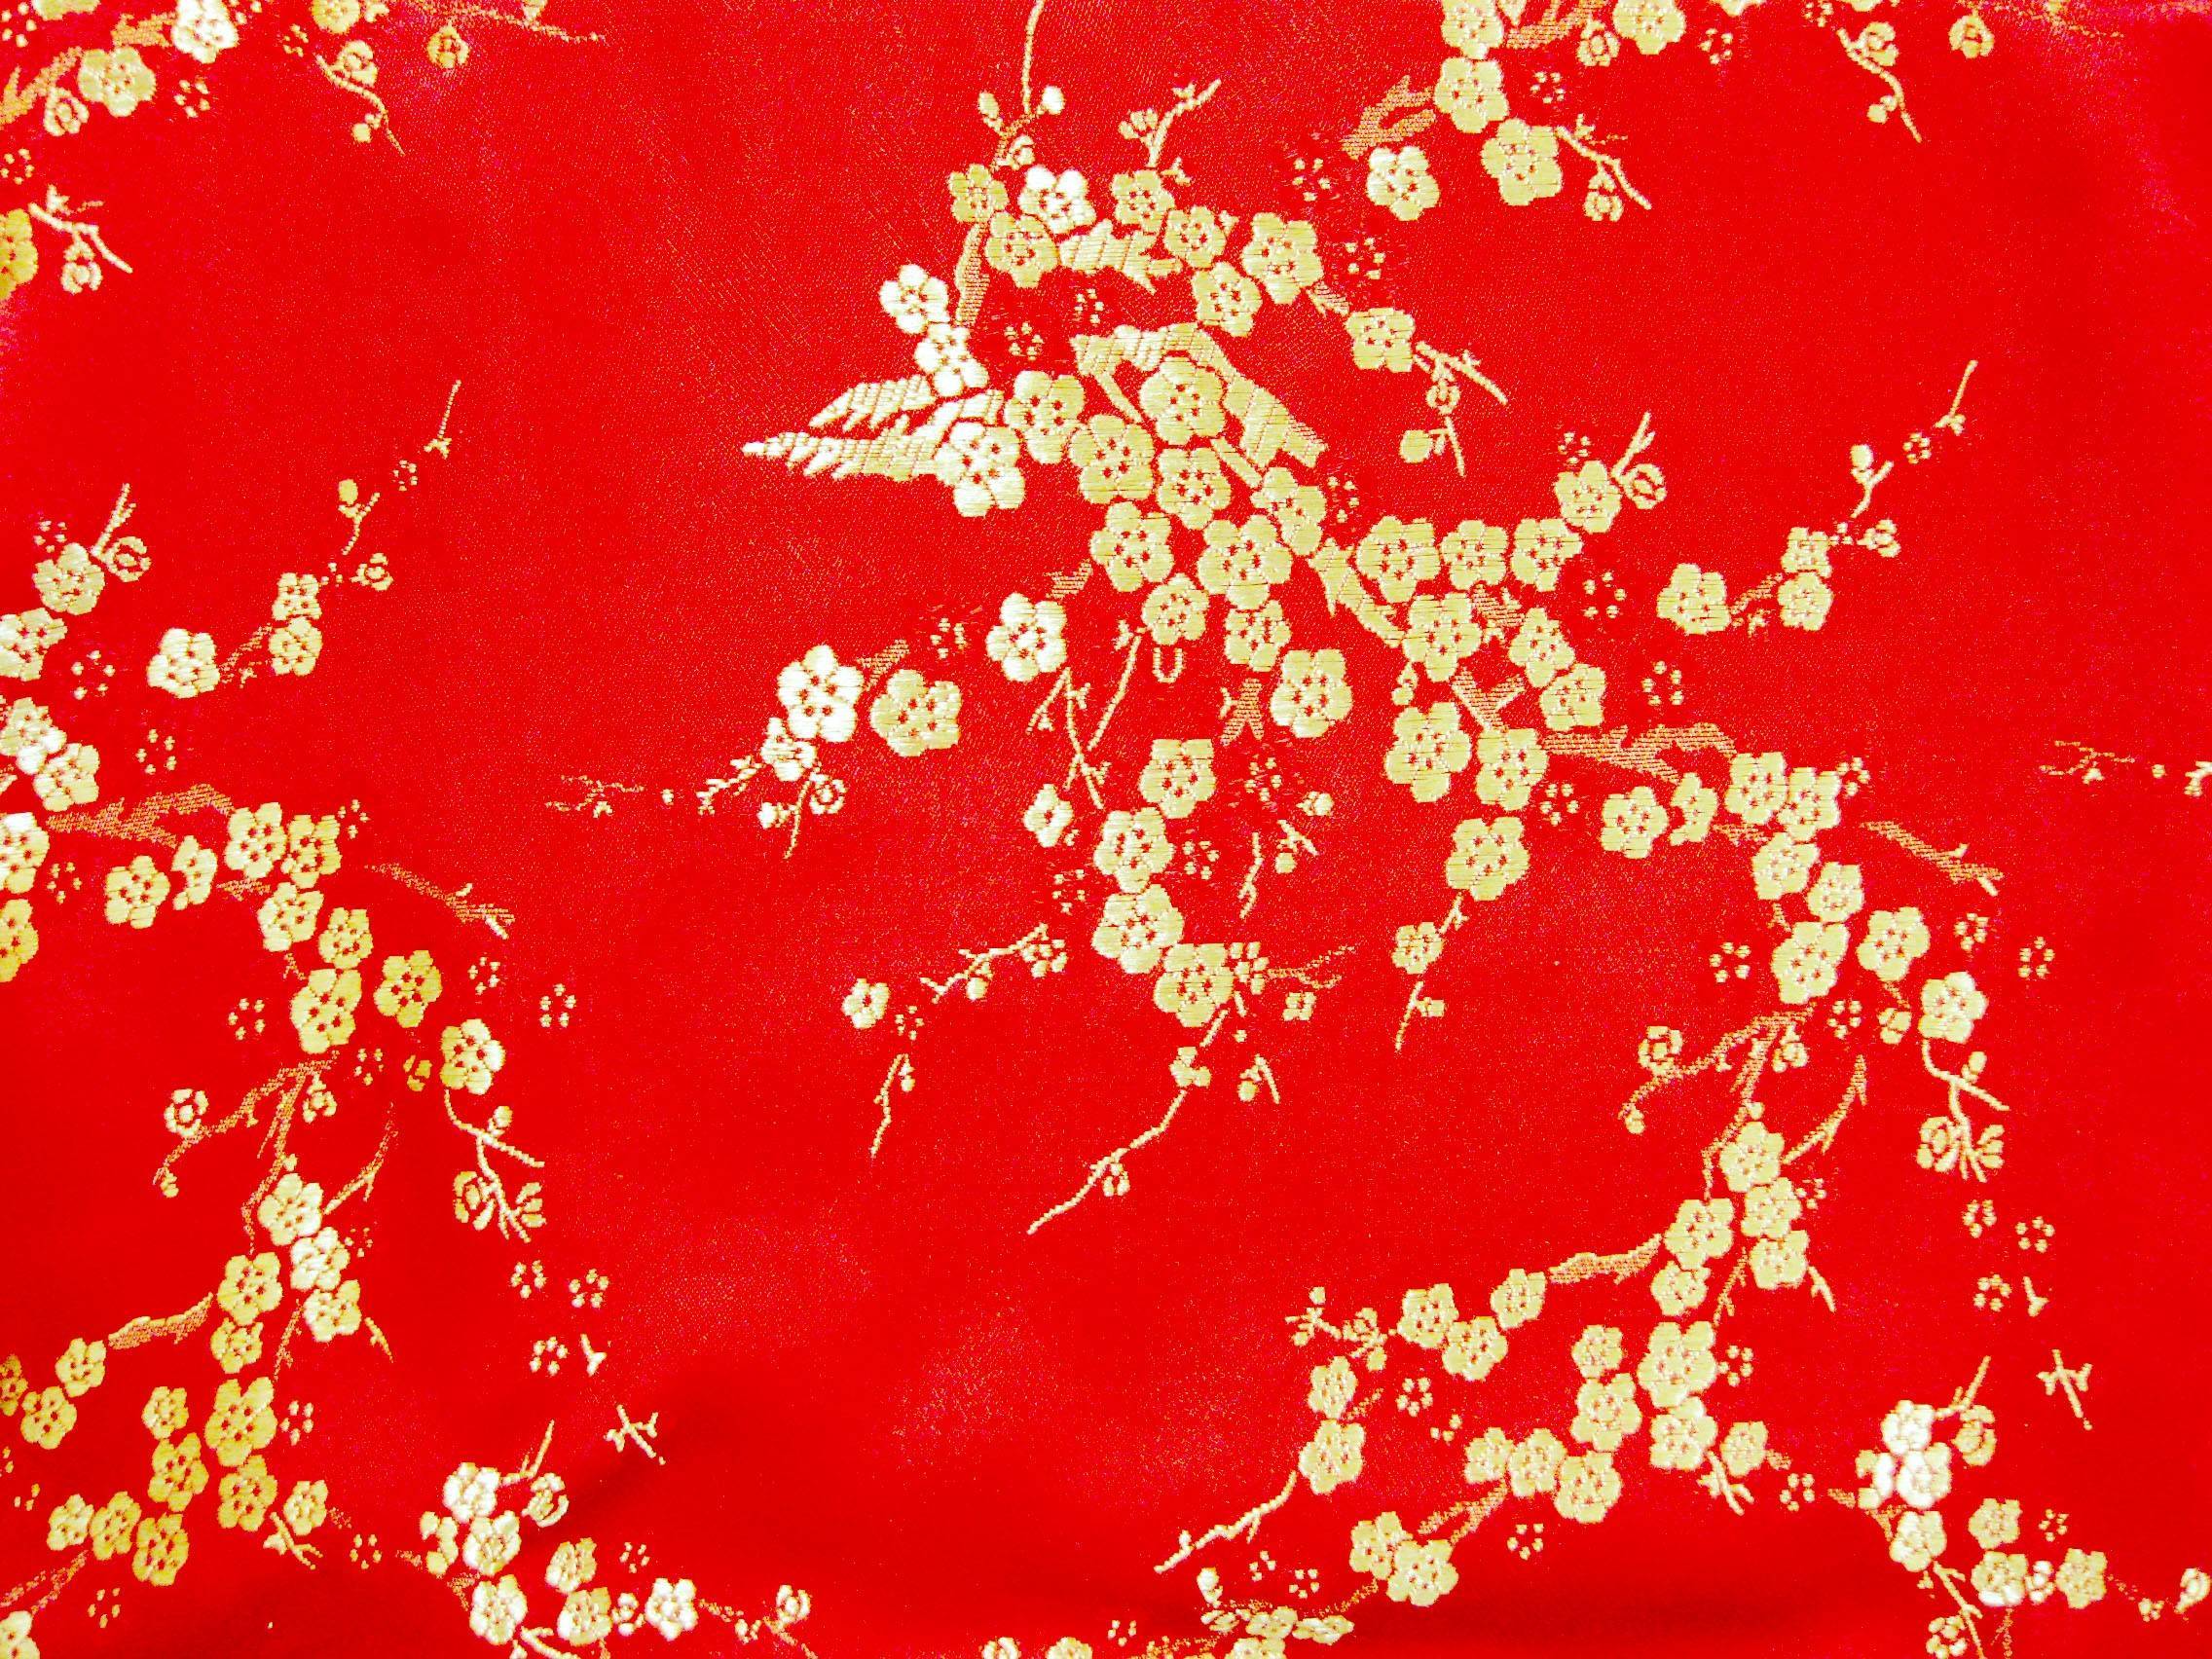 78+] Chinese Wallpaper - WallpaperSafari